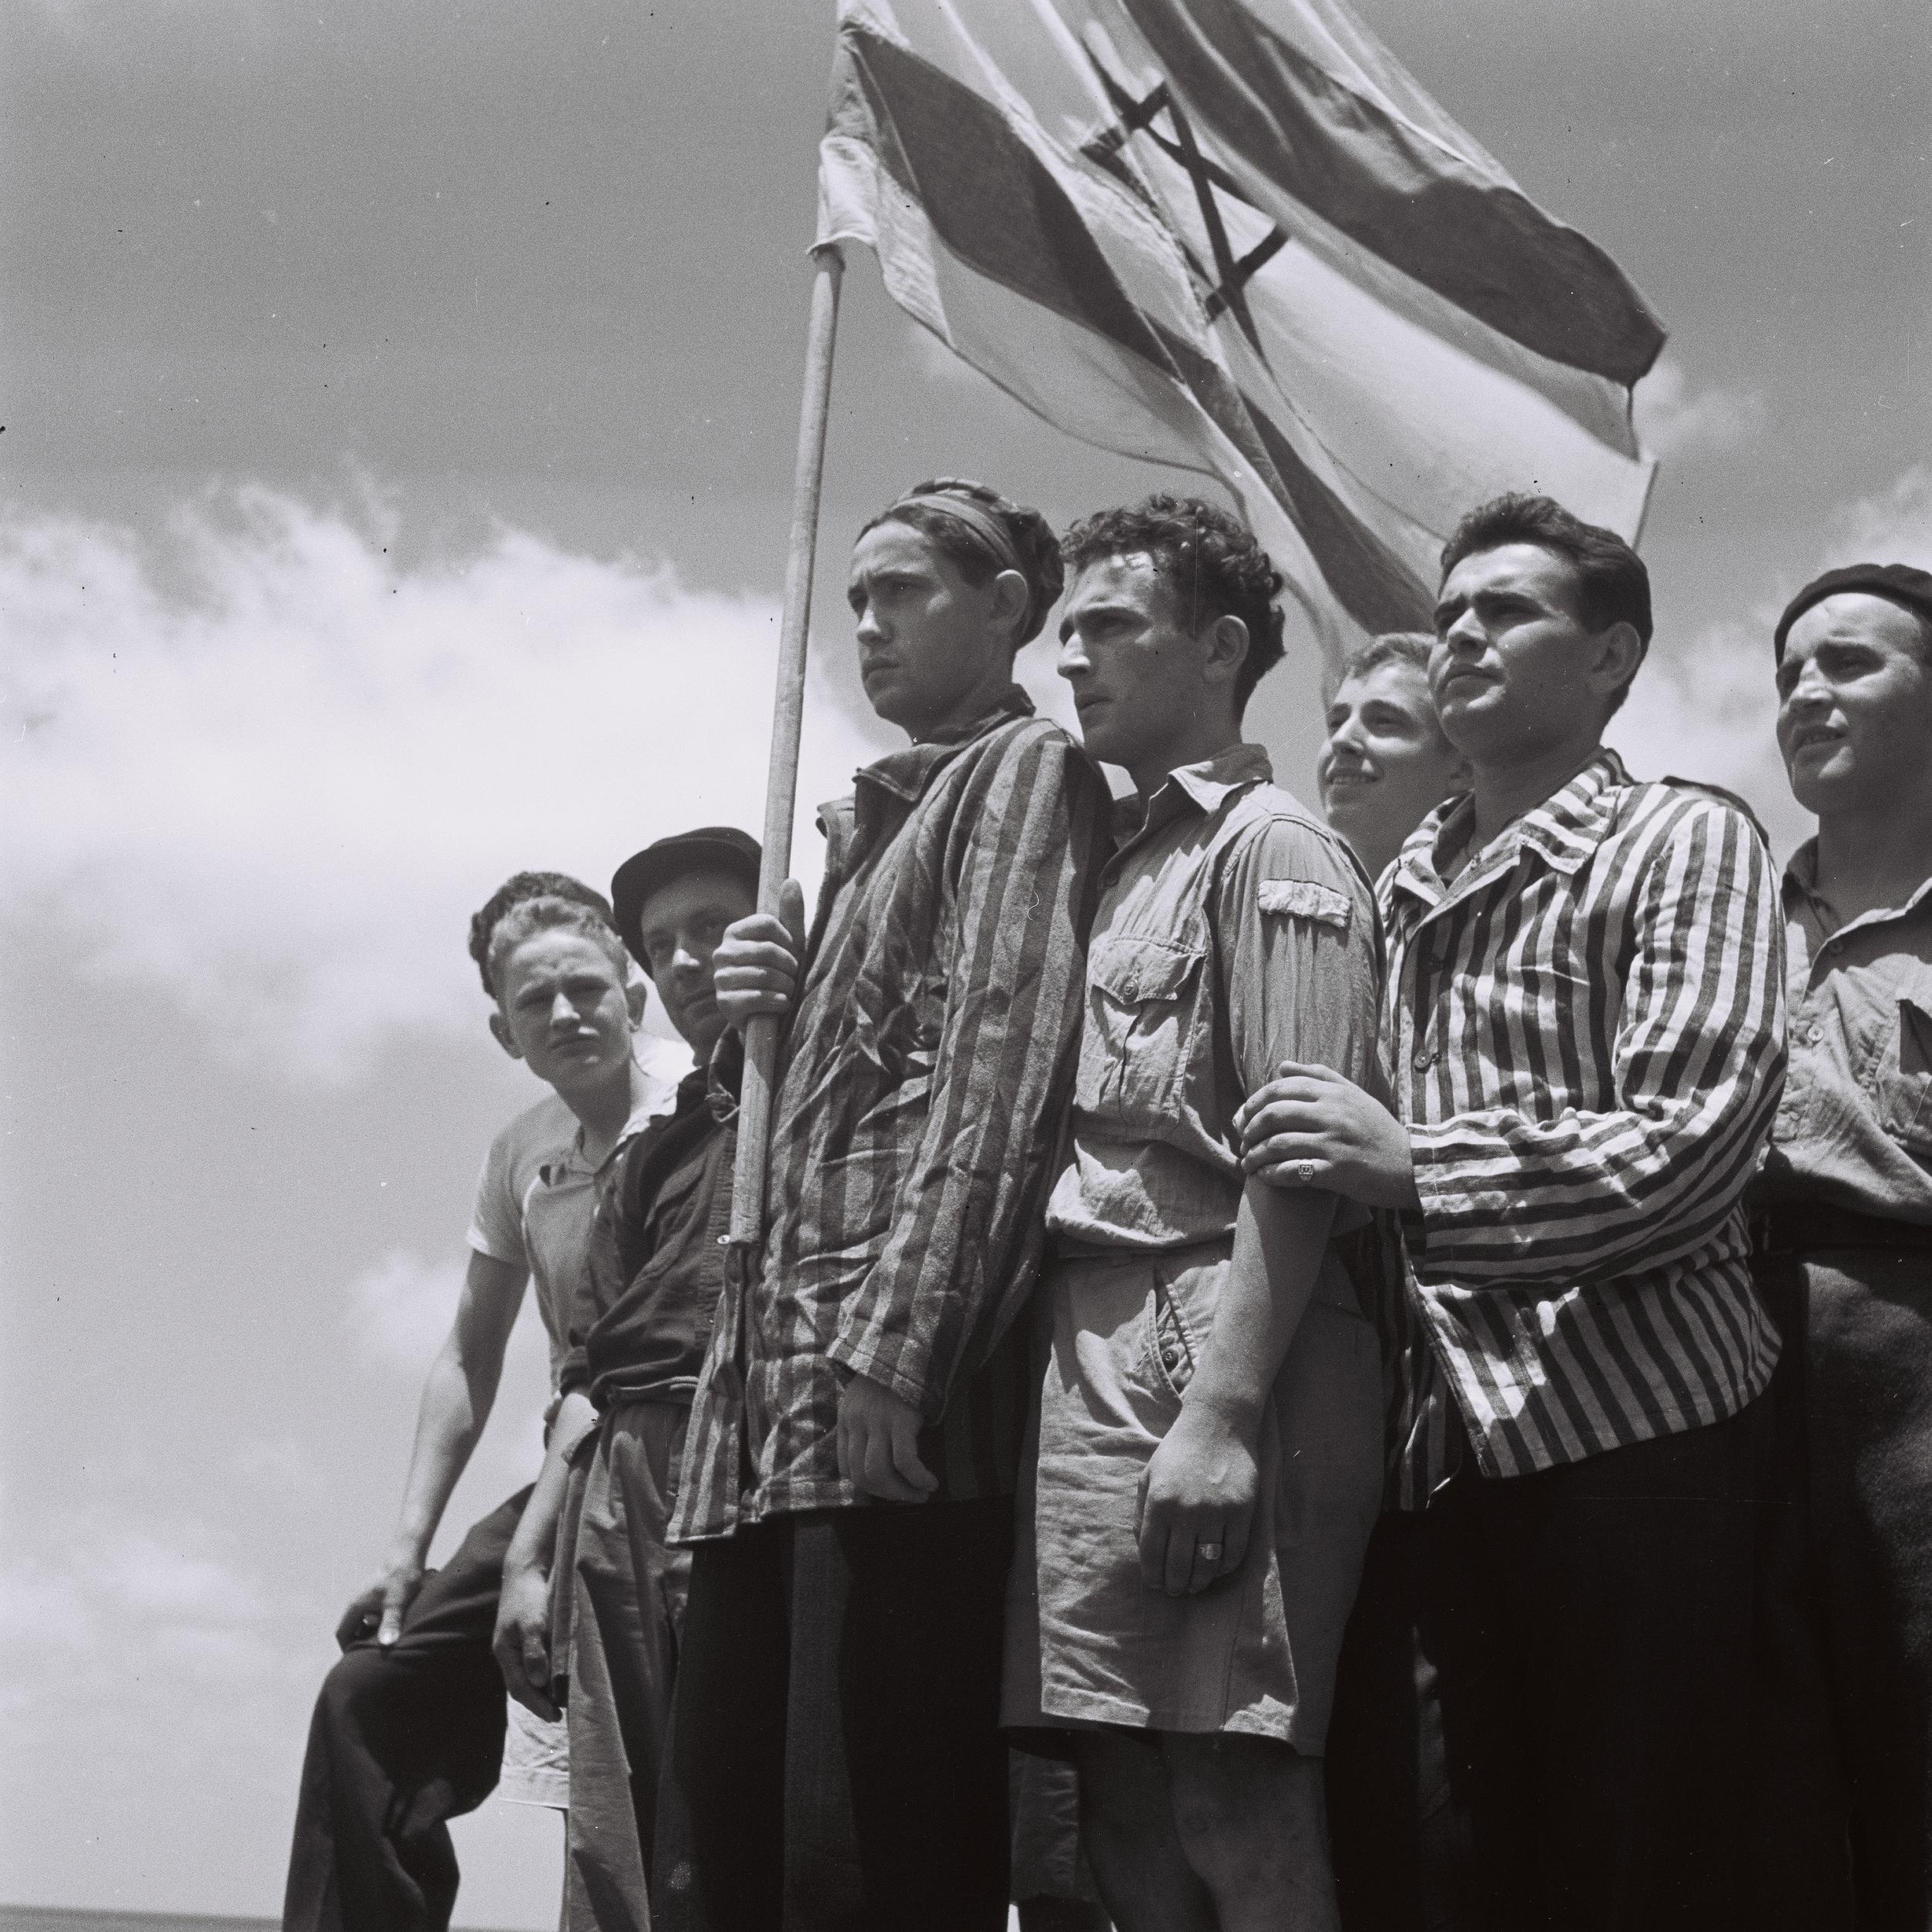 Résultat de recherche d'images pour "buchenwald survivors haifa"